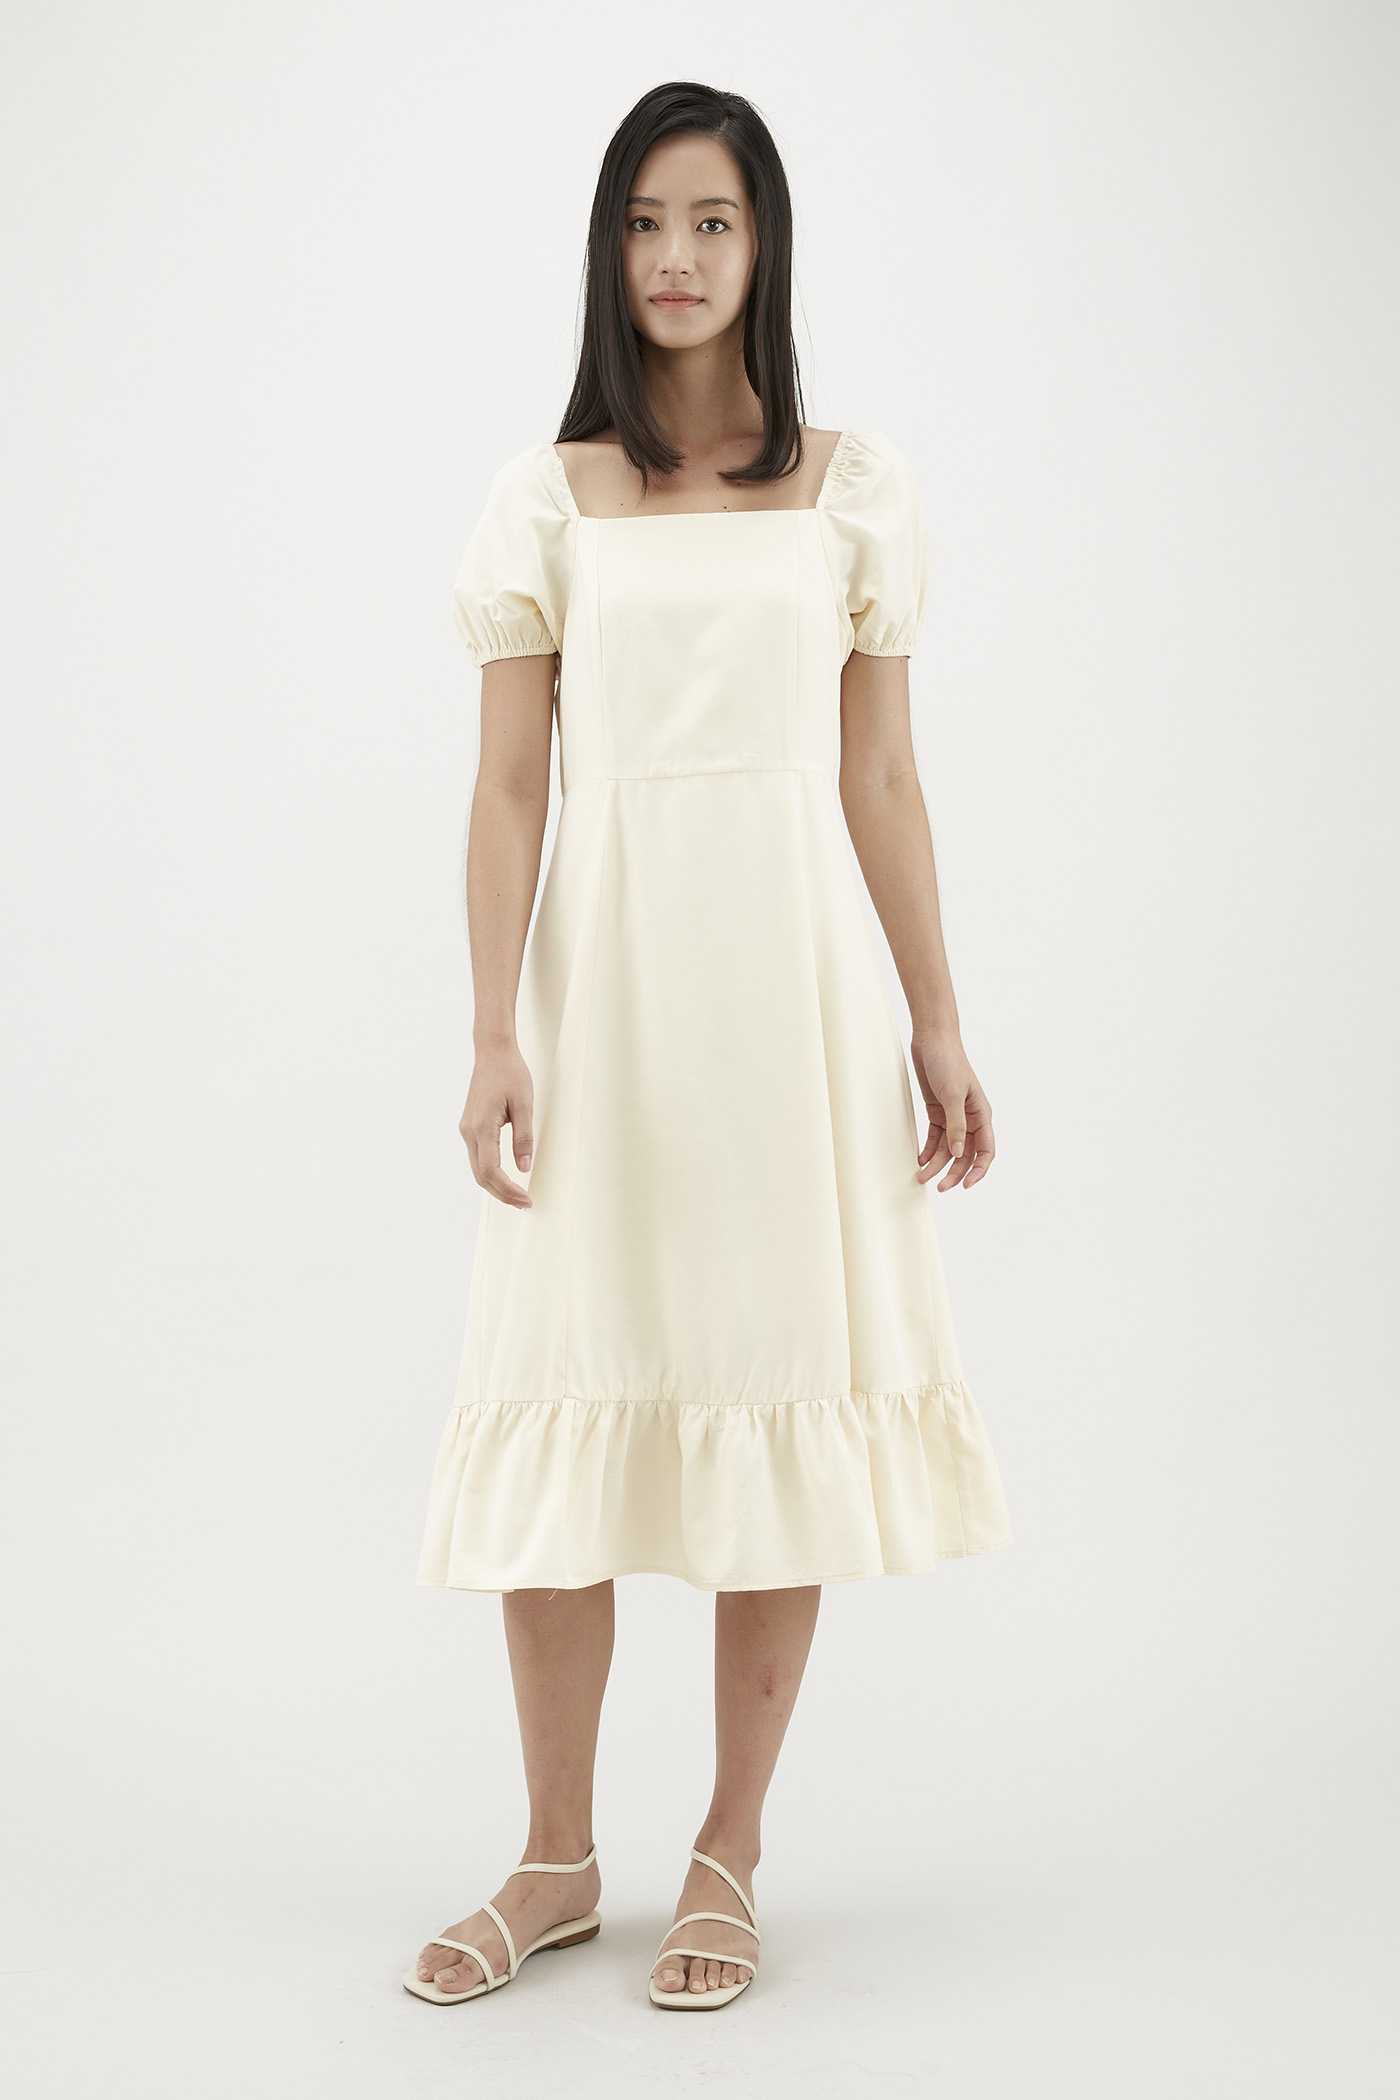 Eydie Puff-Sleeve Dress